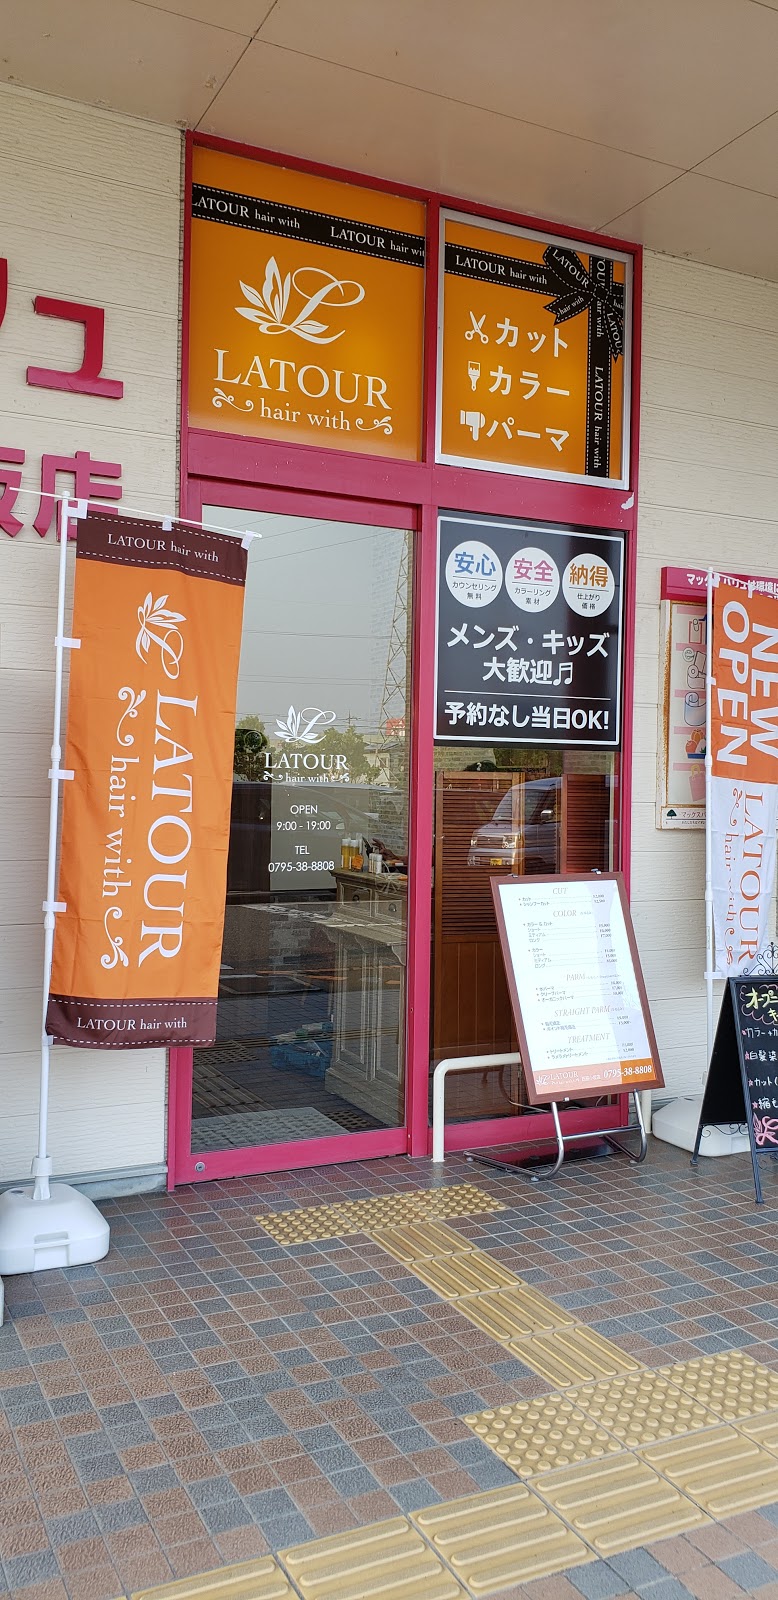 グルコミ 兵庫県西脇市 美容院で みんなの評価と口コミがすぐわかるグルメ 観光サイト